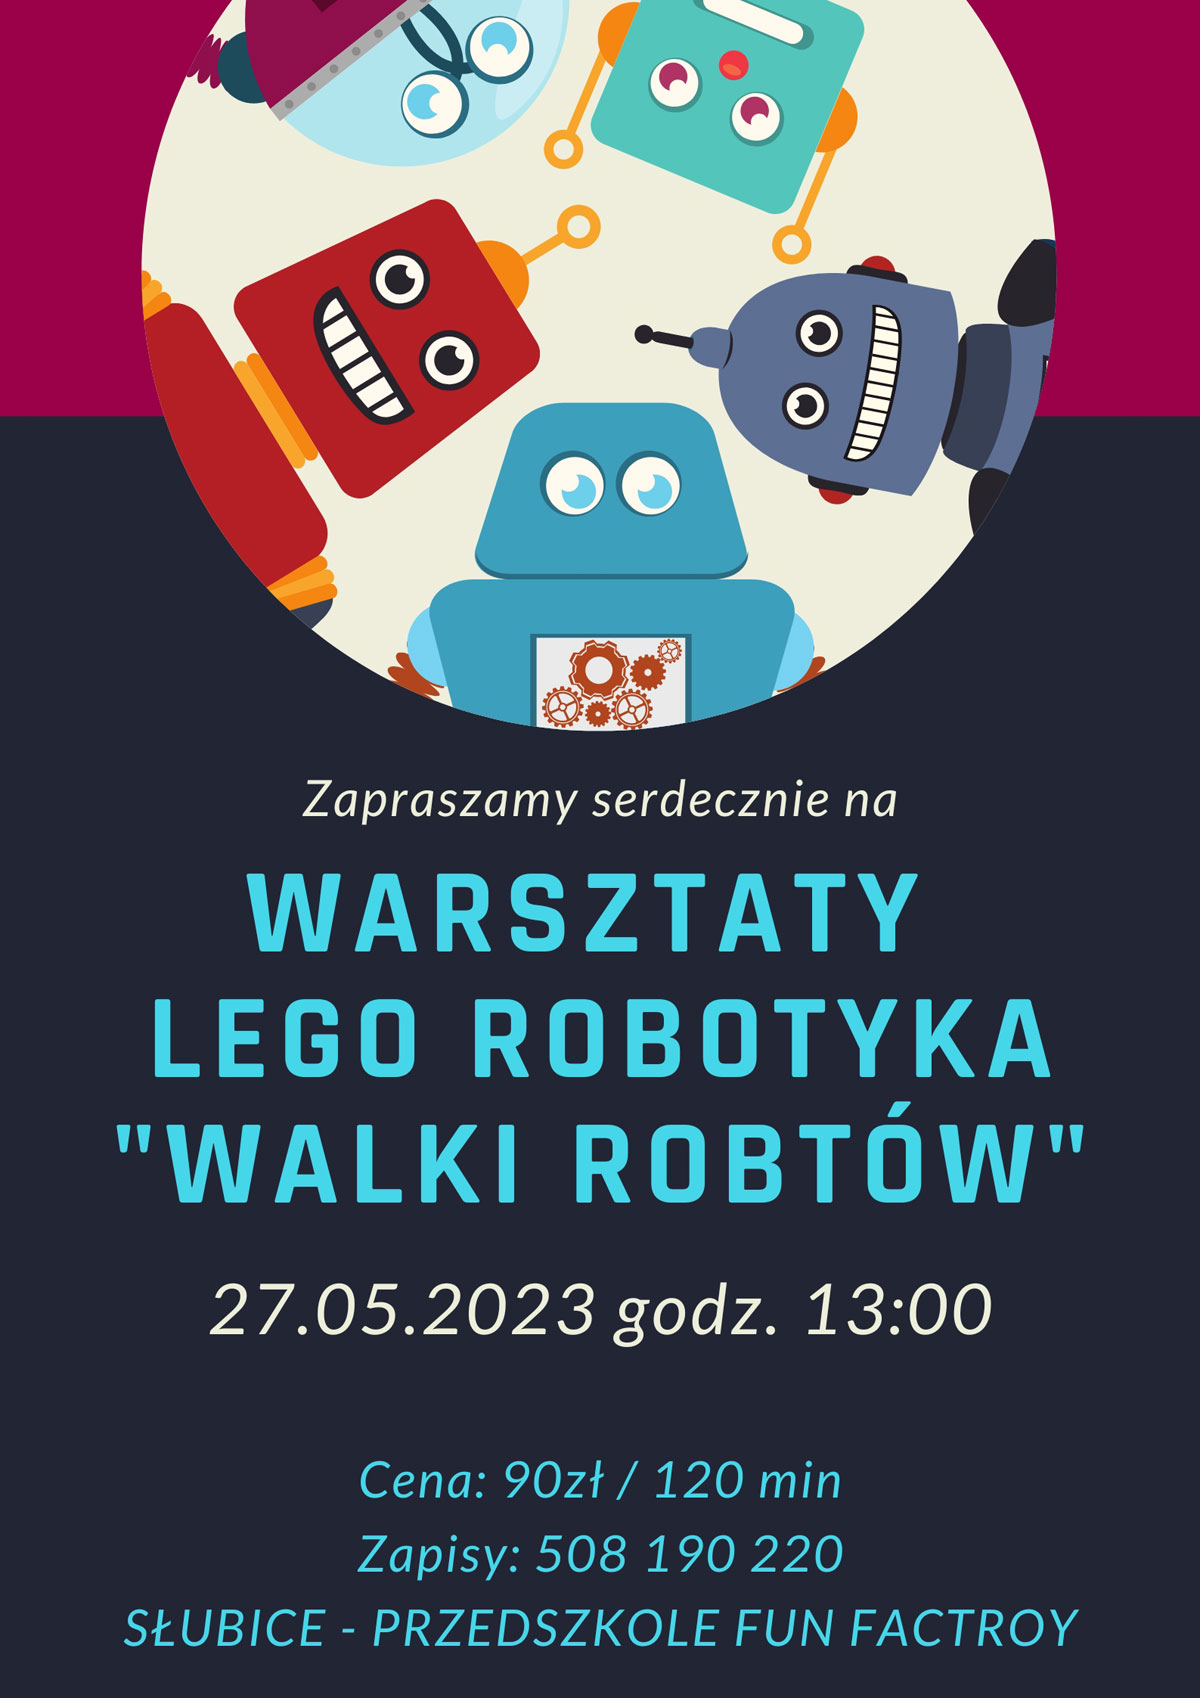 Warsztaty Lego Robotyki "Walki robotów" w Słubicach